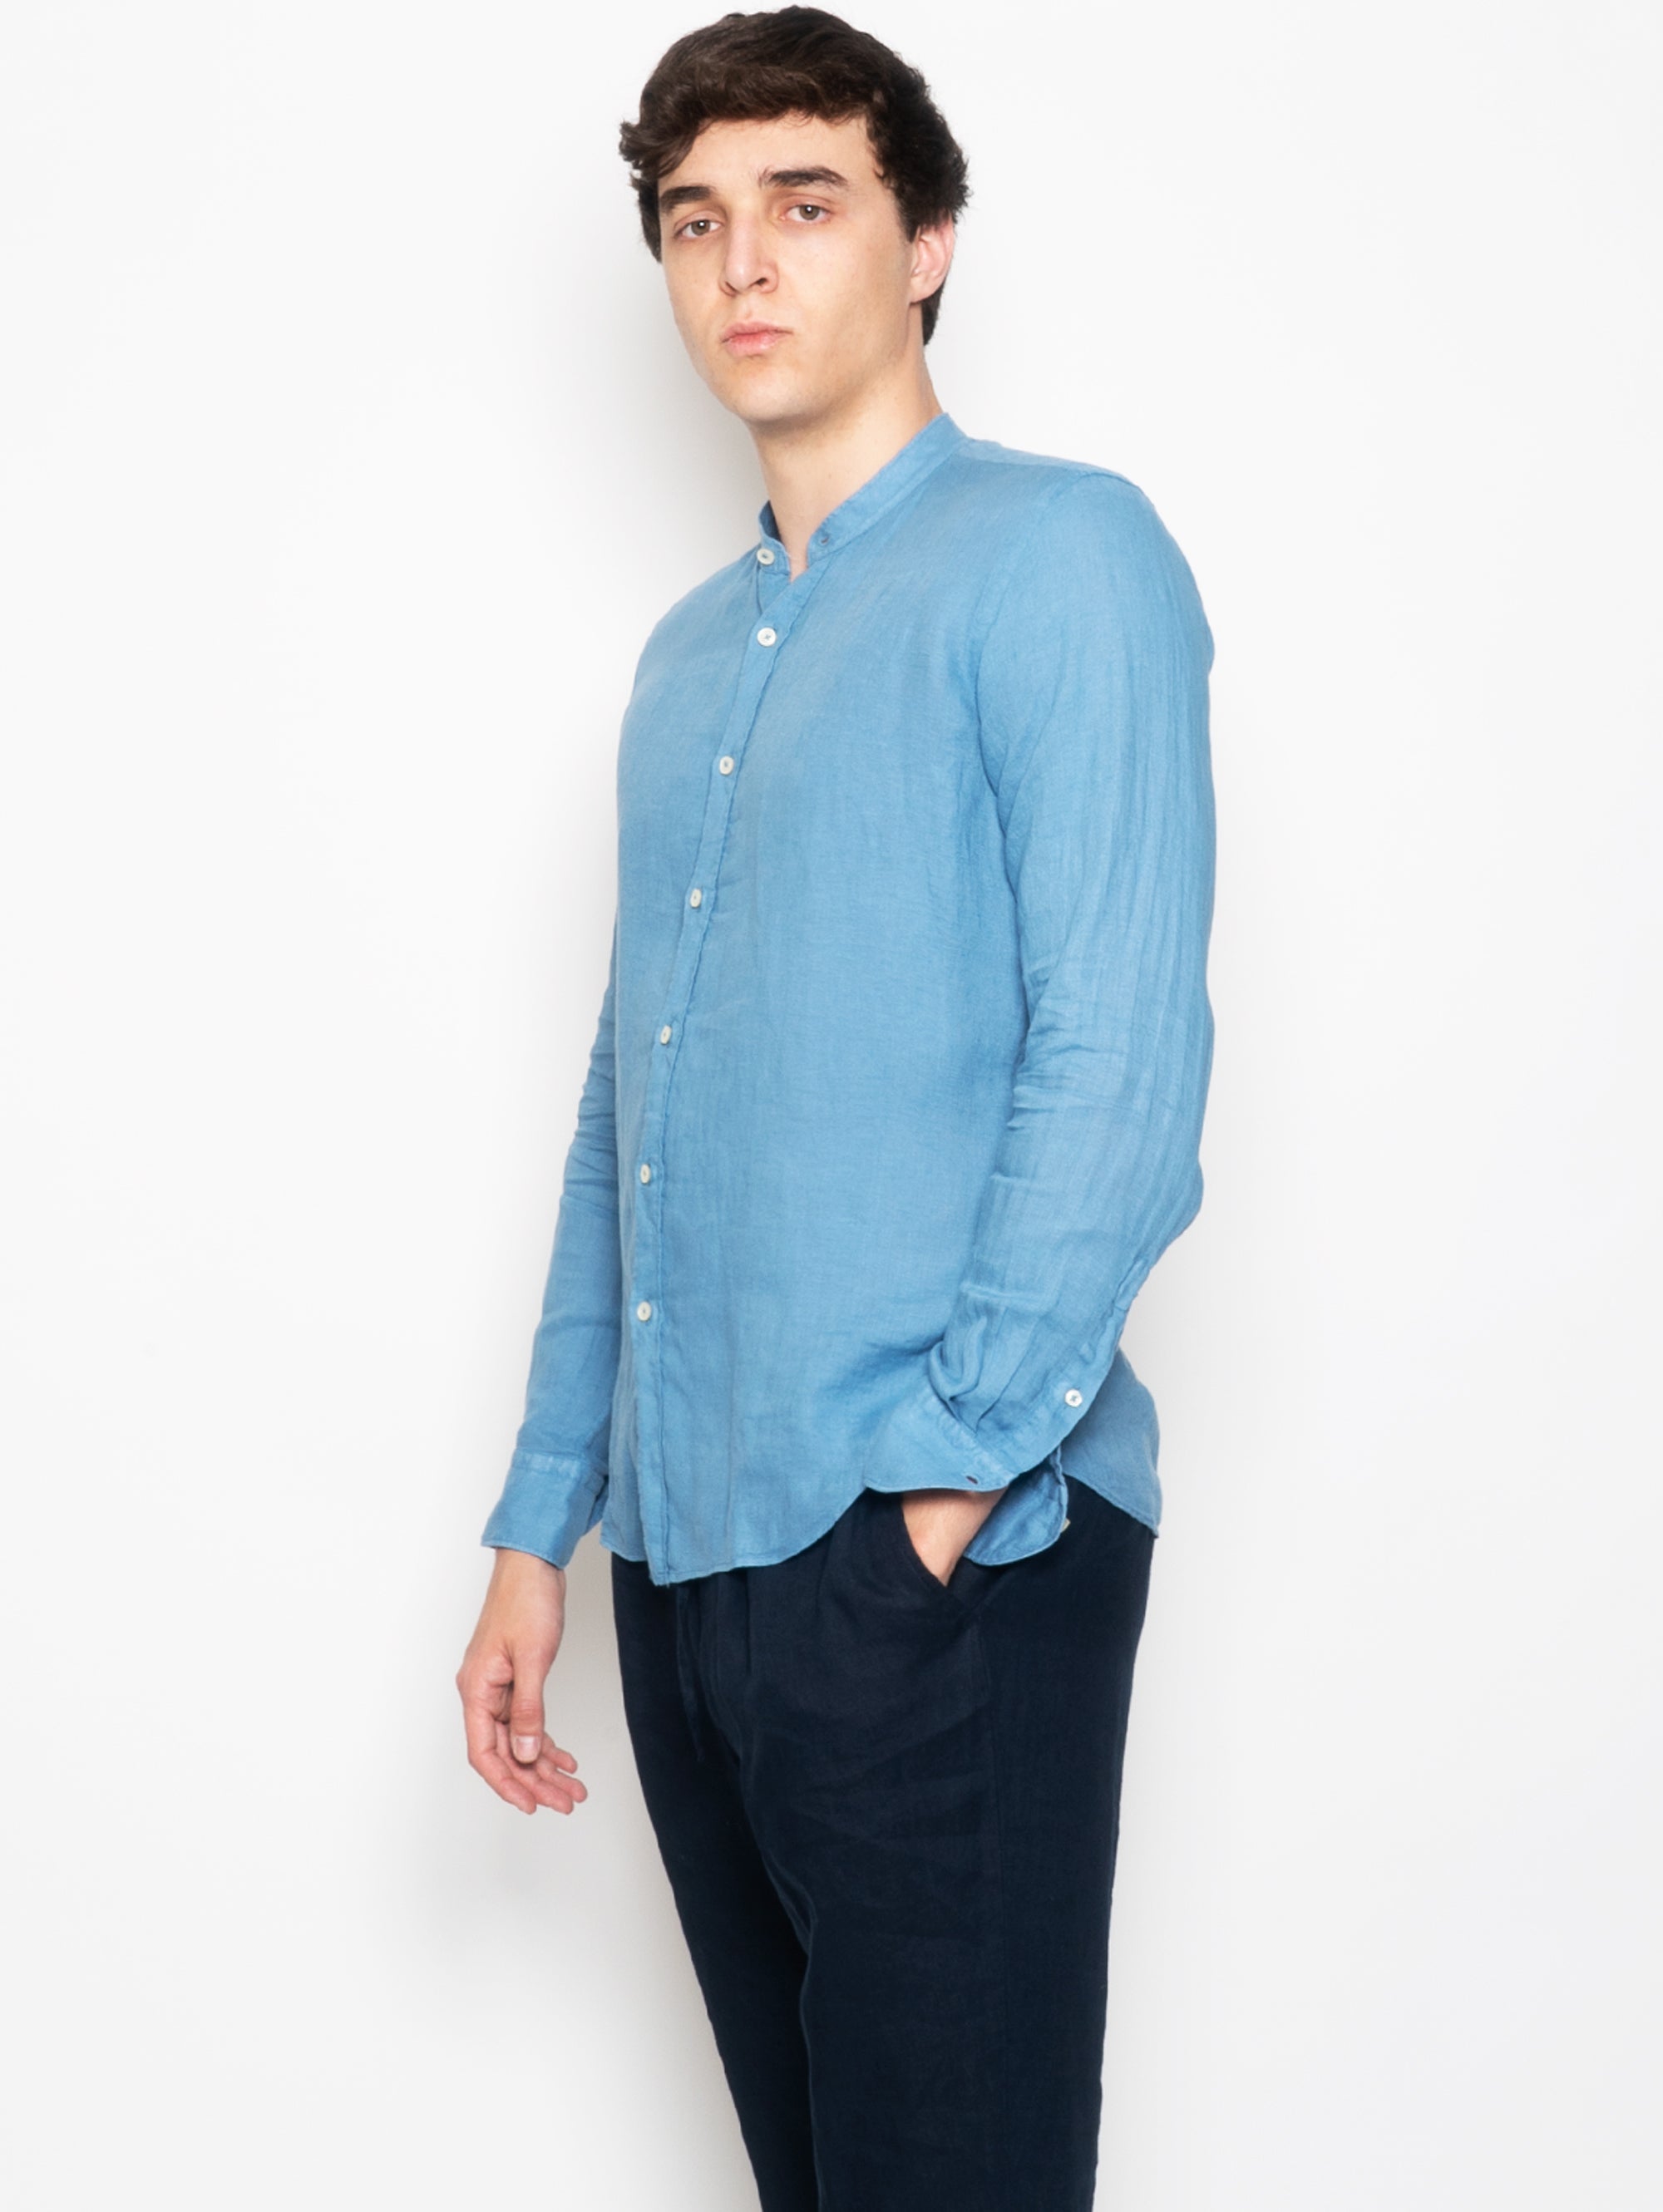 Mandarin Shirt in Blue Linen